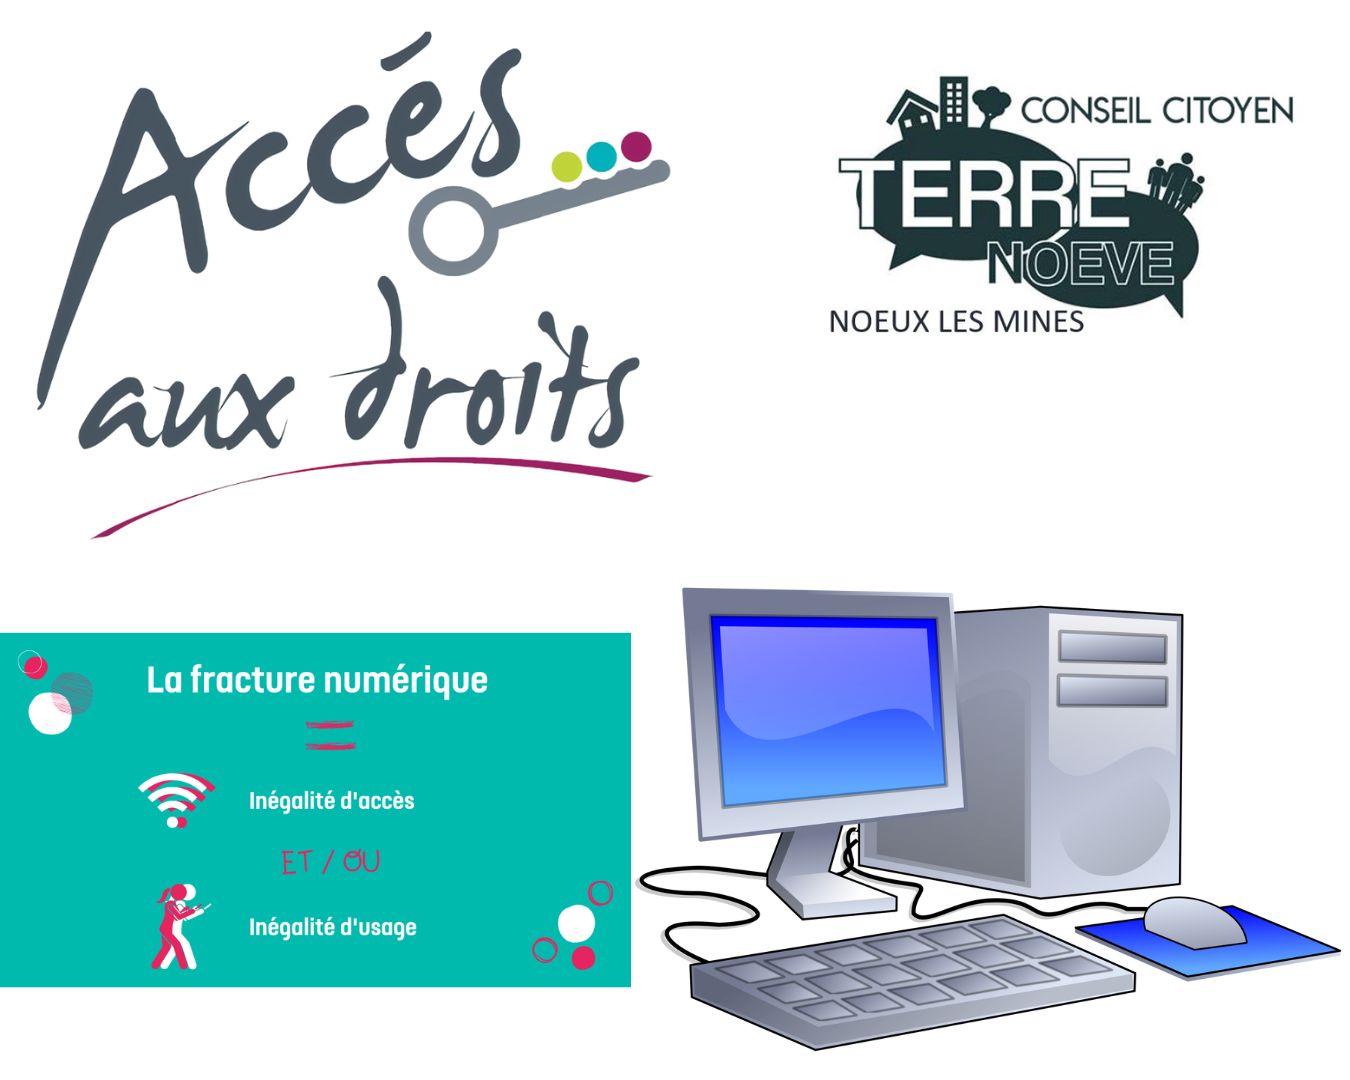 Aide-Administrative-et-Numérique-La-Bricothèque-Location d'outils-Noeux-les-mines